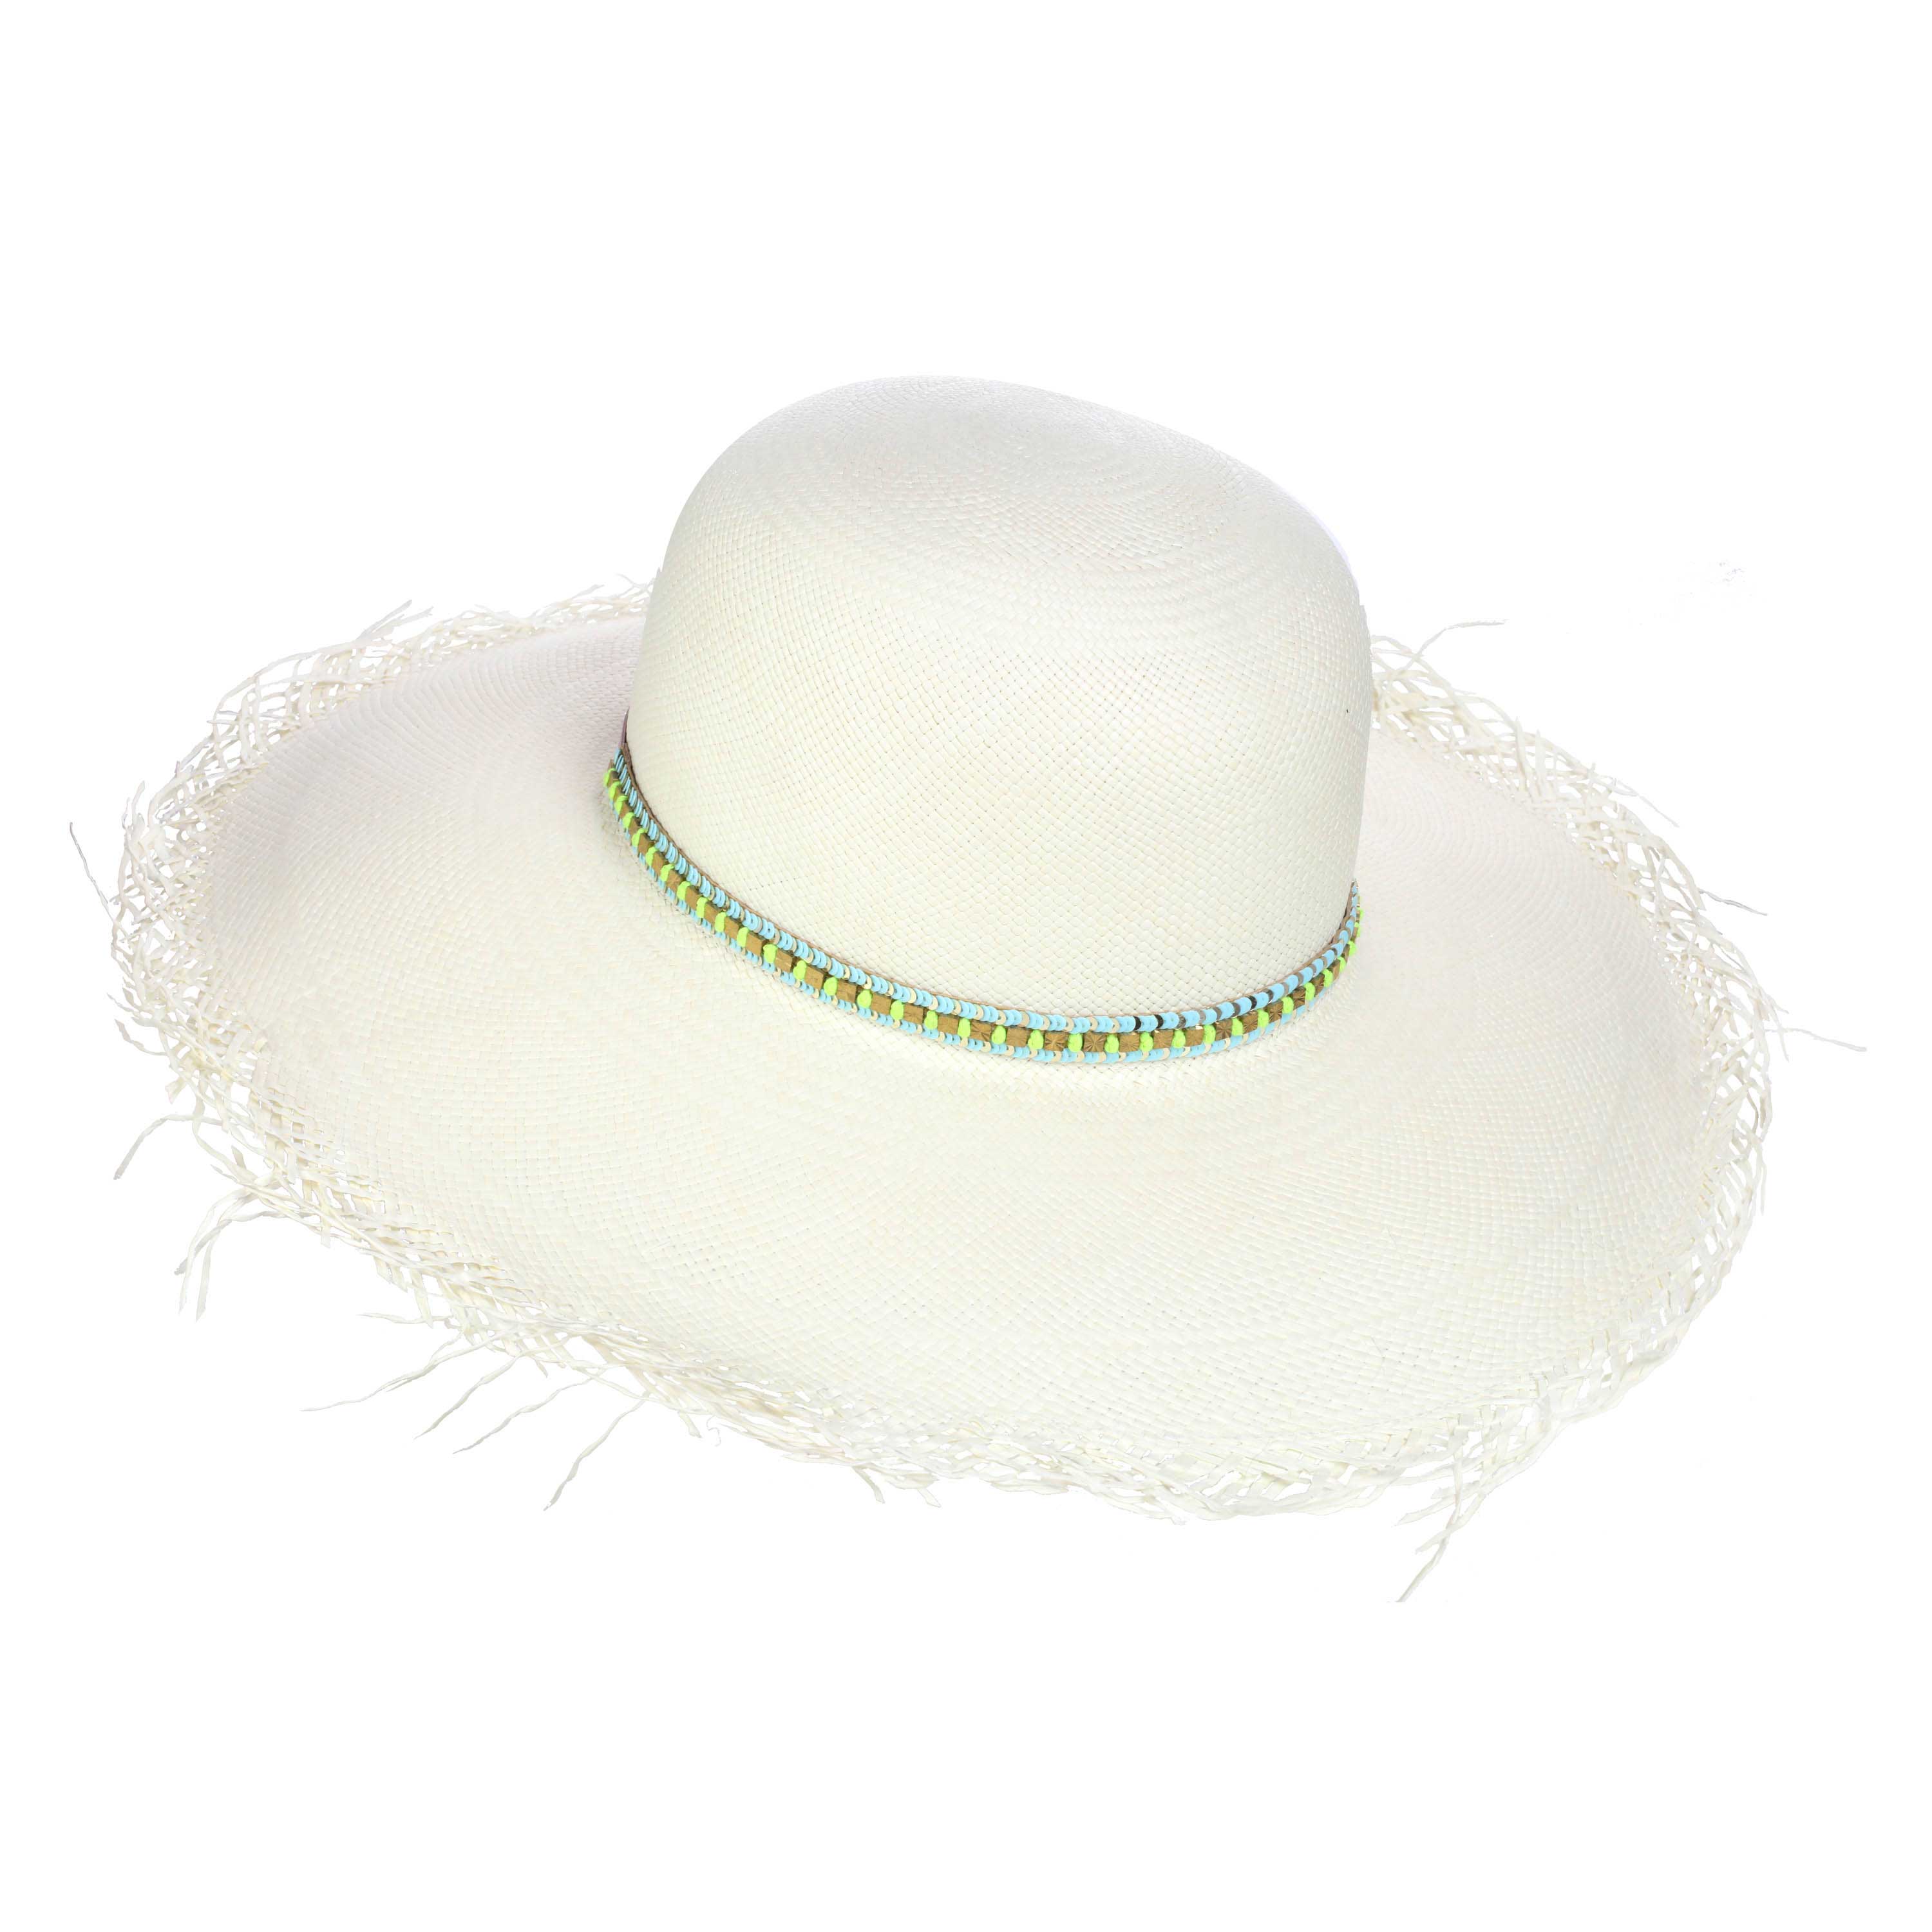 The Bonafacio Frayed Edge Panama Hat